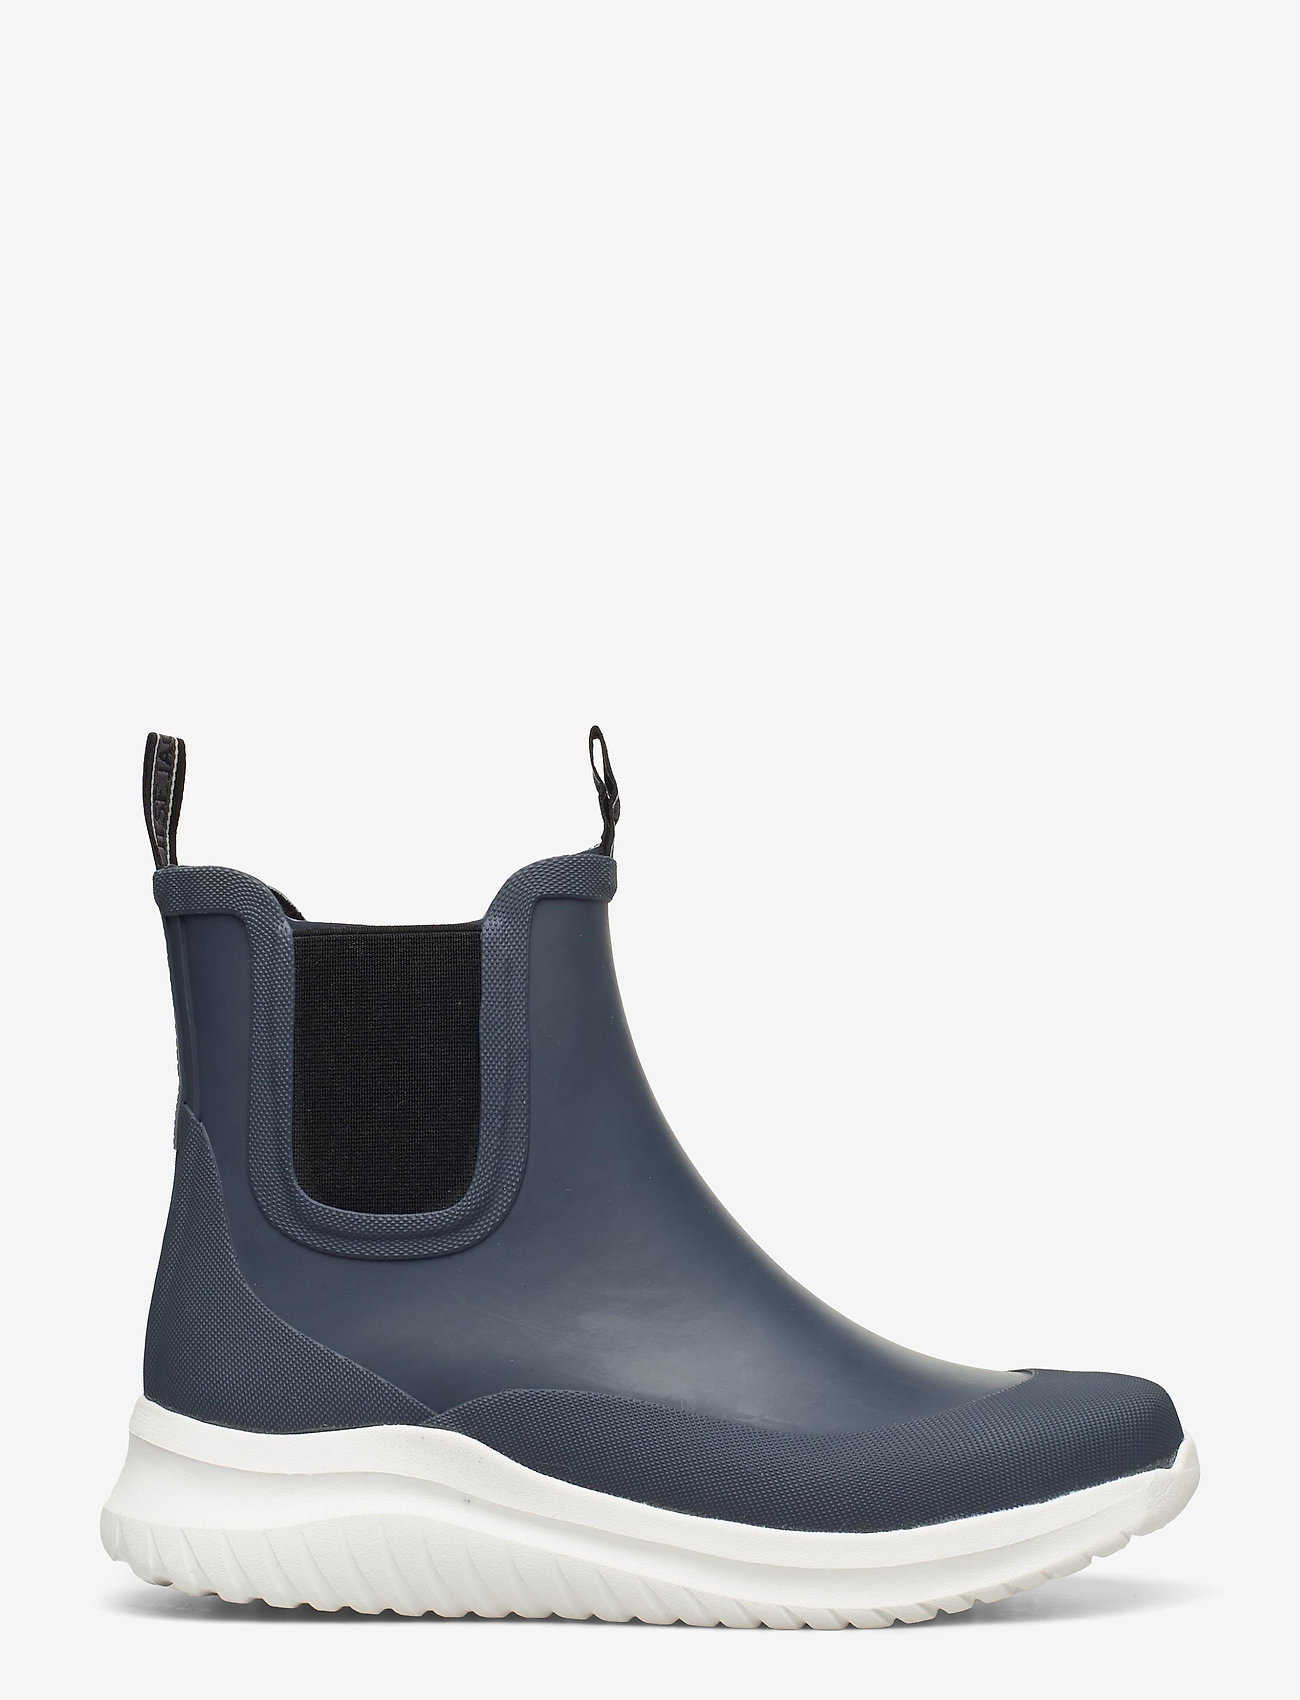 Ilse Jacobsen - Rubber boots ankel - women - orion blue - 0